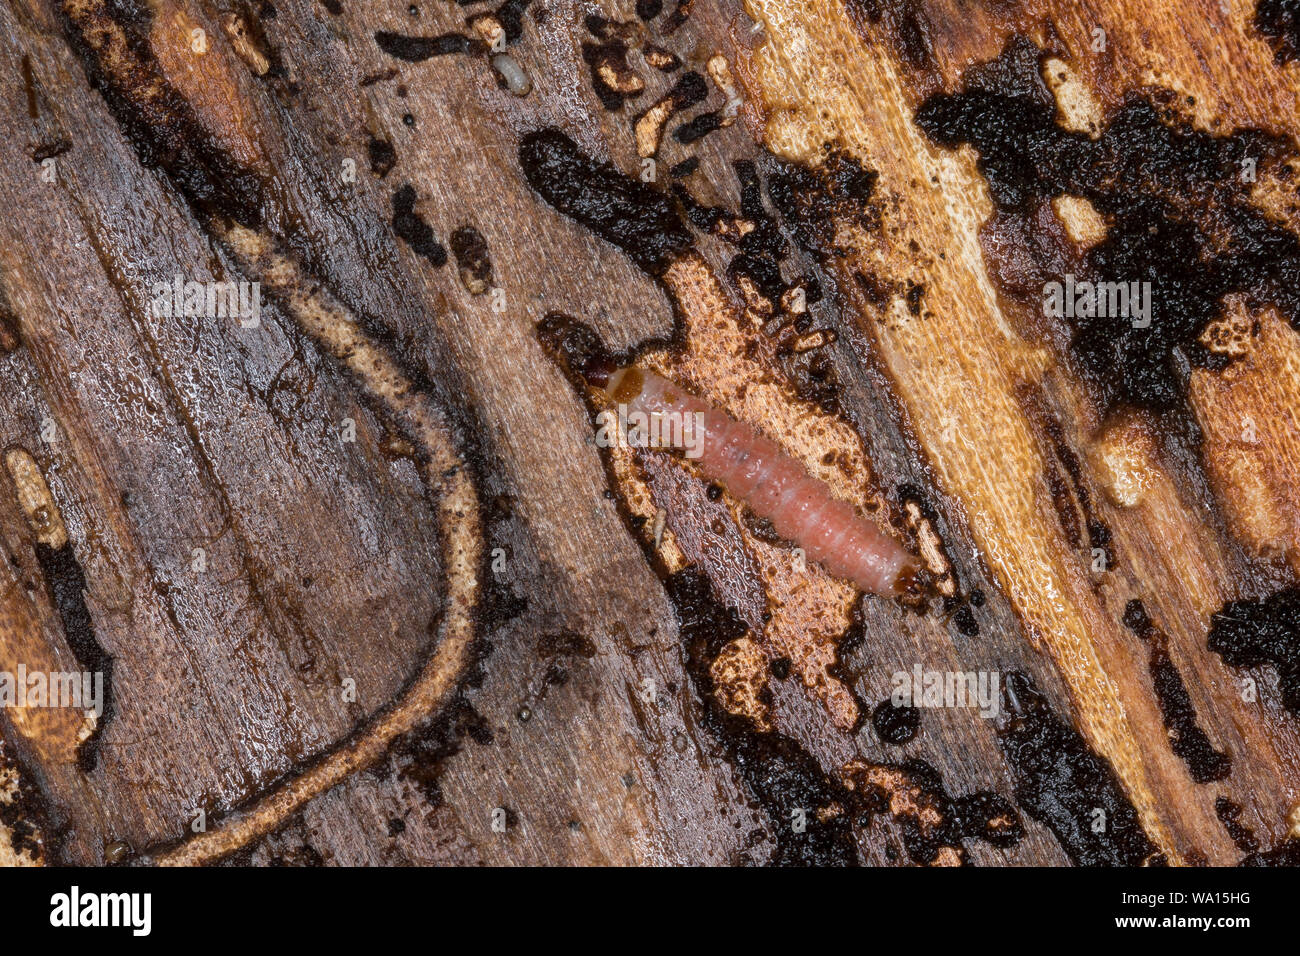 Ameisenbuntkäfer, Ameisenbunt-Käfer, Dove unter der Rinde einer Fichte, Gemeiner Ameisenbuntkäfer, Borkenkäferfresser, Ameisenartiger Buntkäfer, als Stockfoto